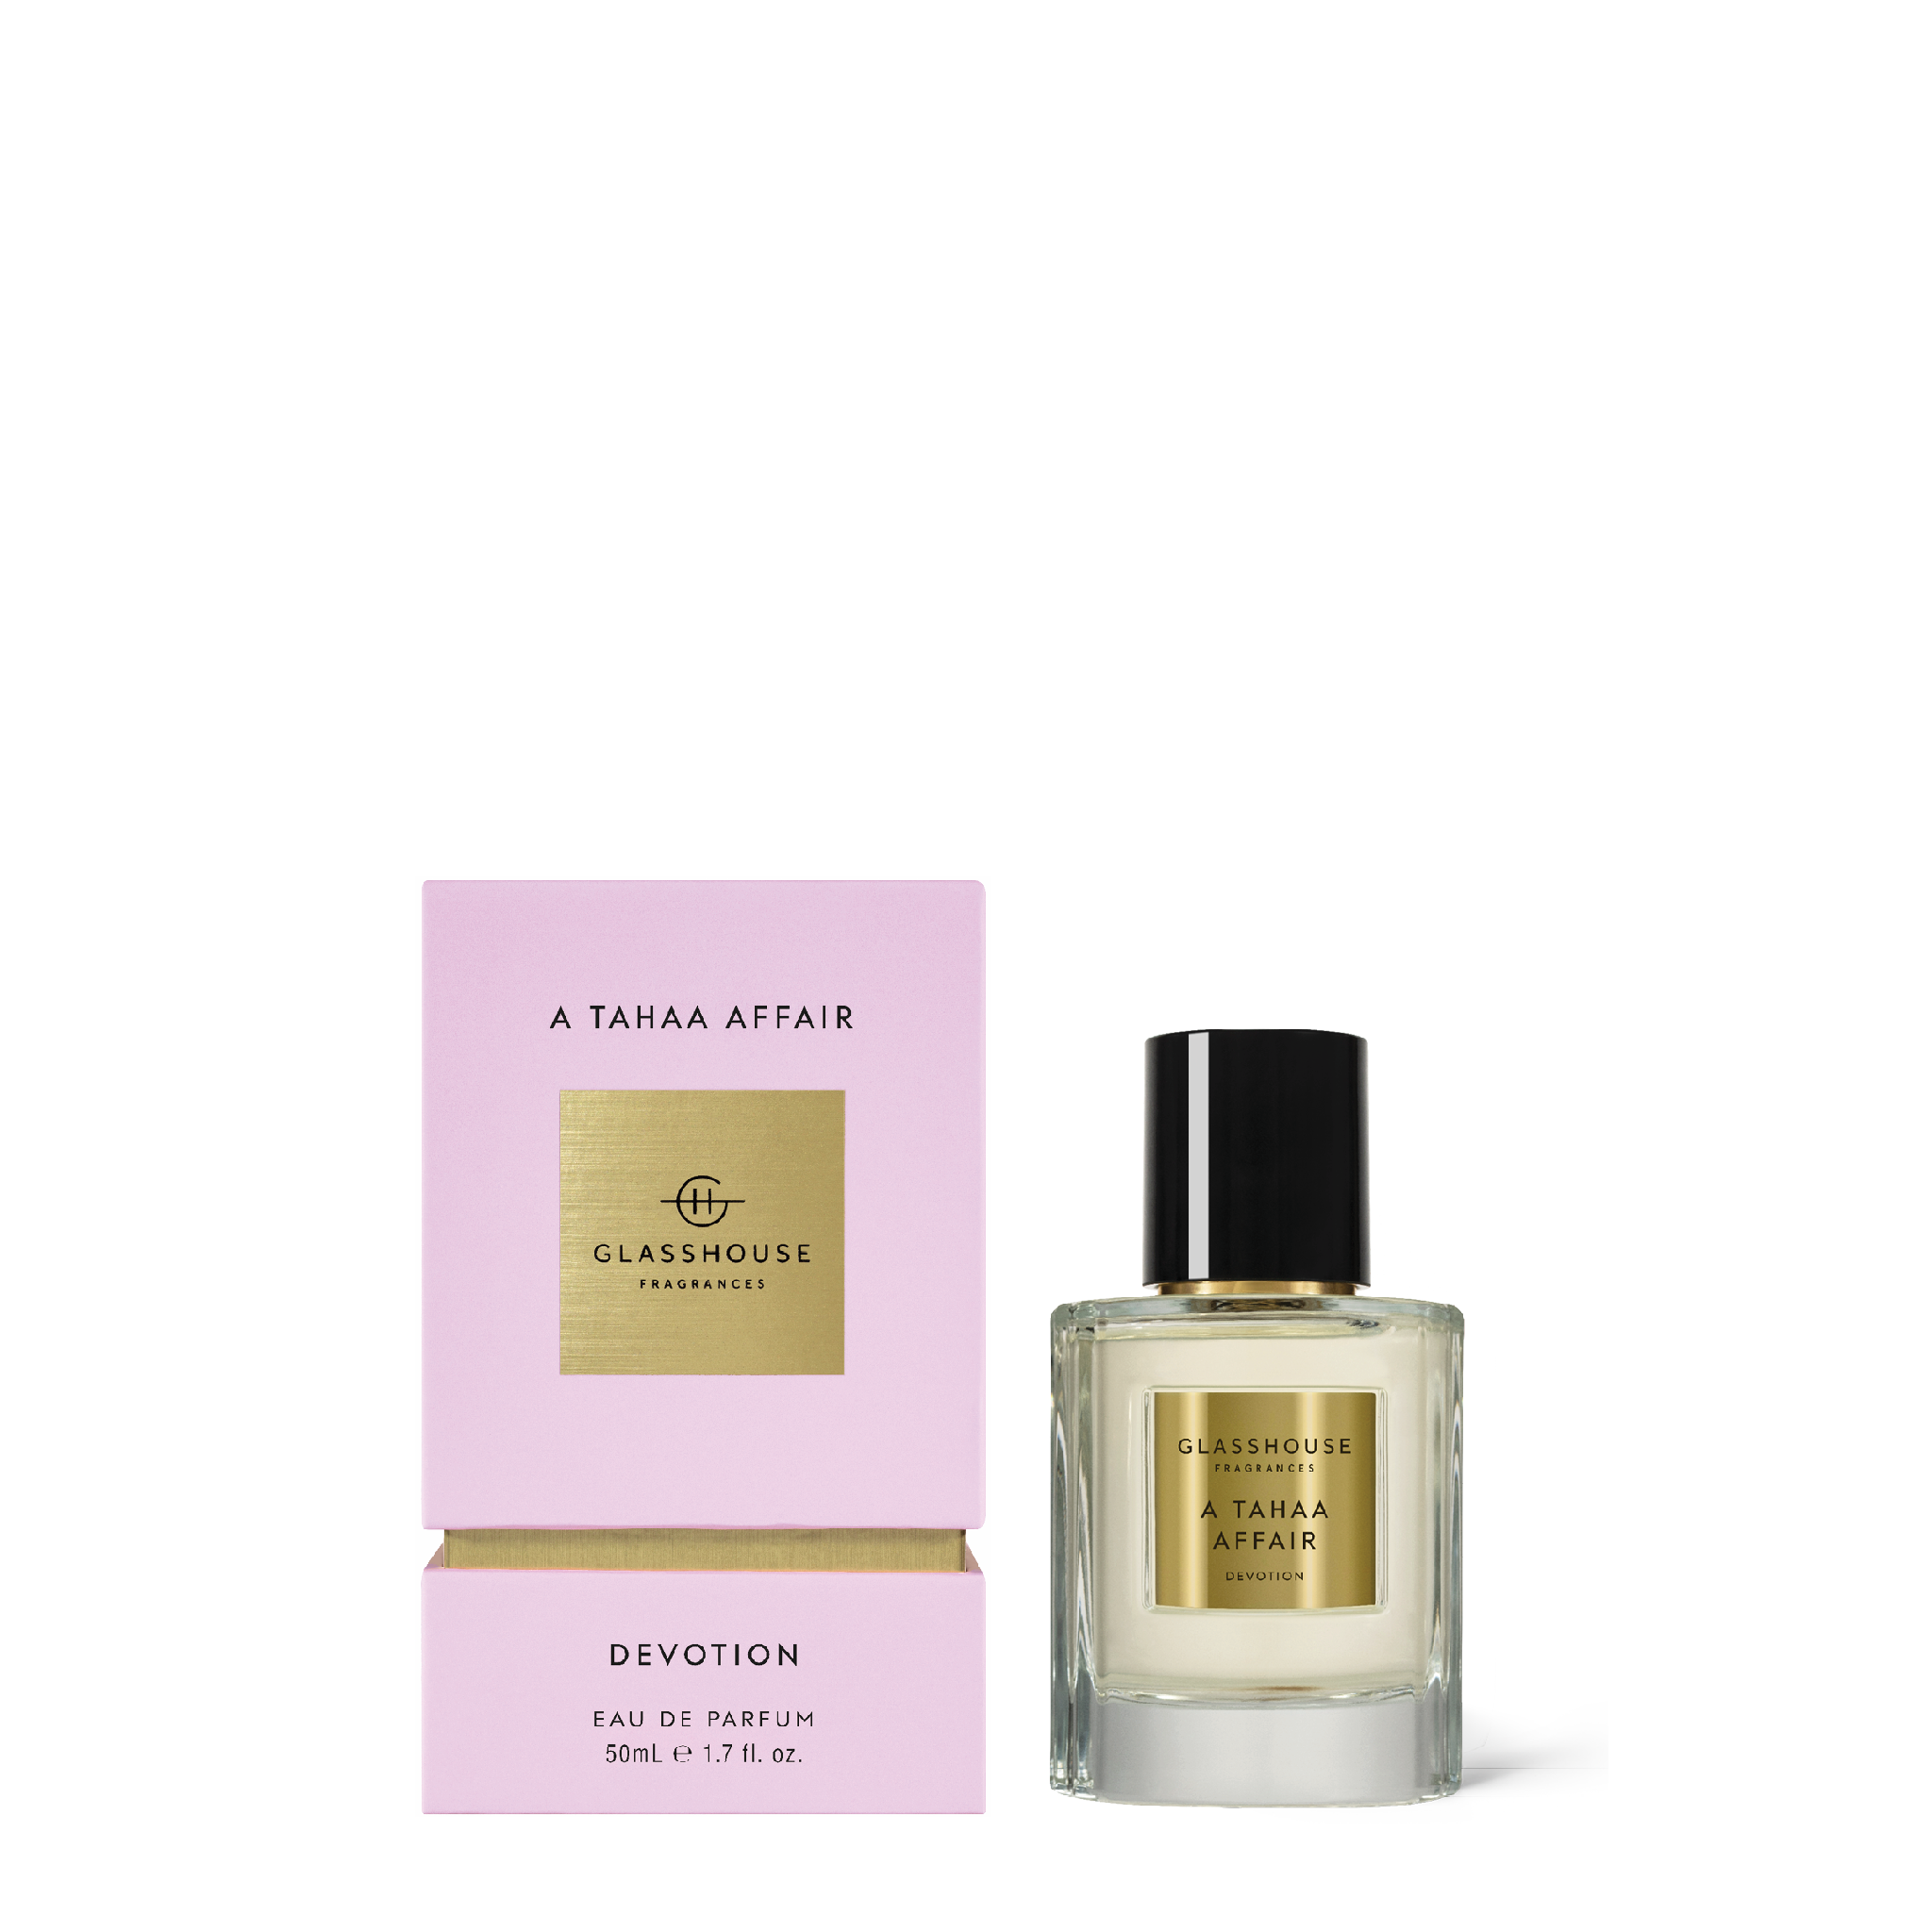 Glasshouse Fragrances A Tahaa Affair Vanilla Caramel 50mL Eau de Parfum spray with box